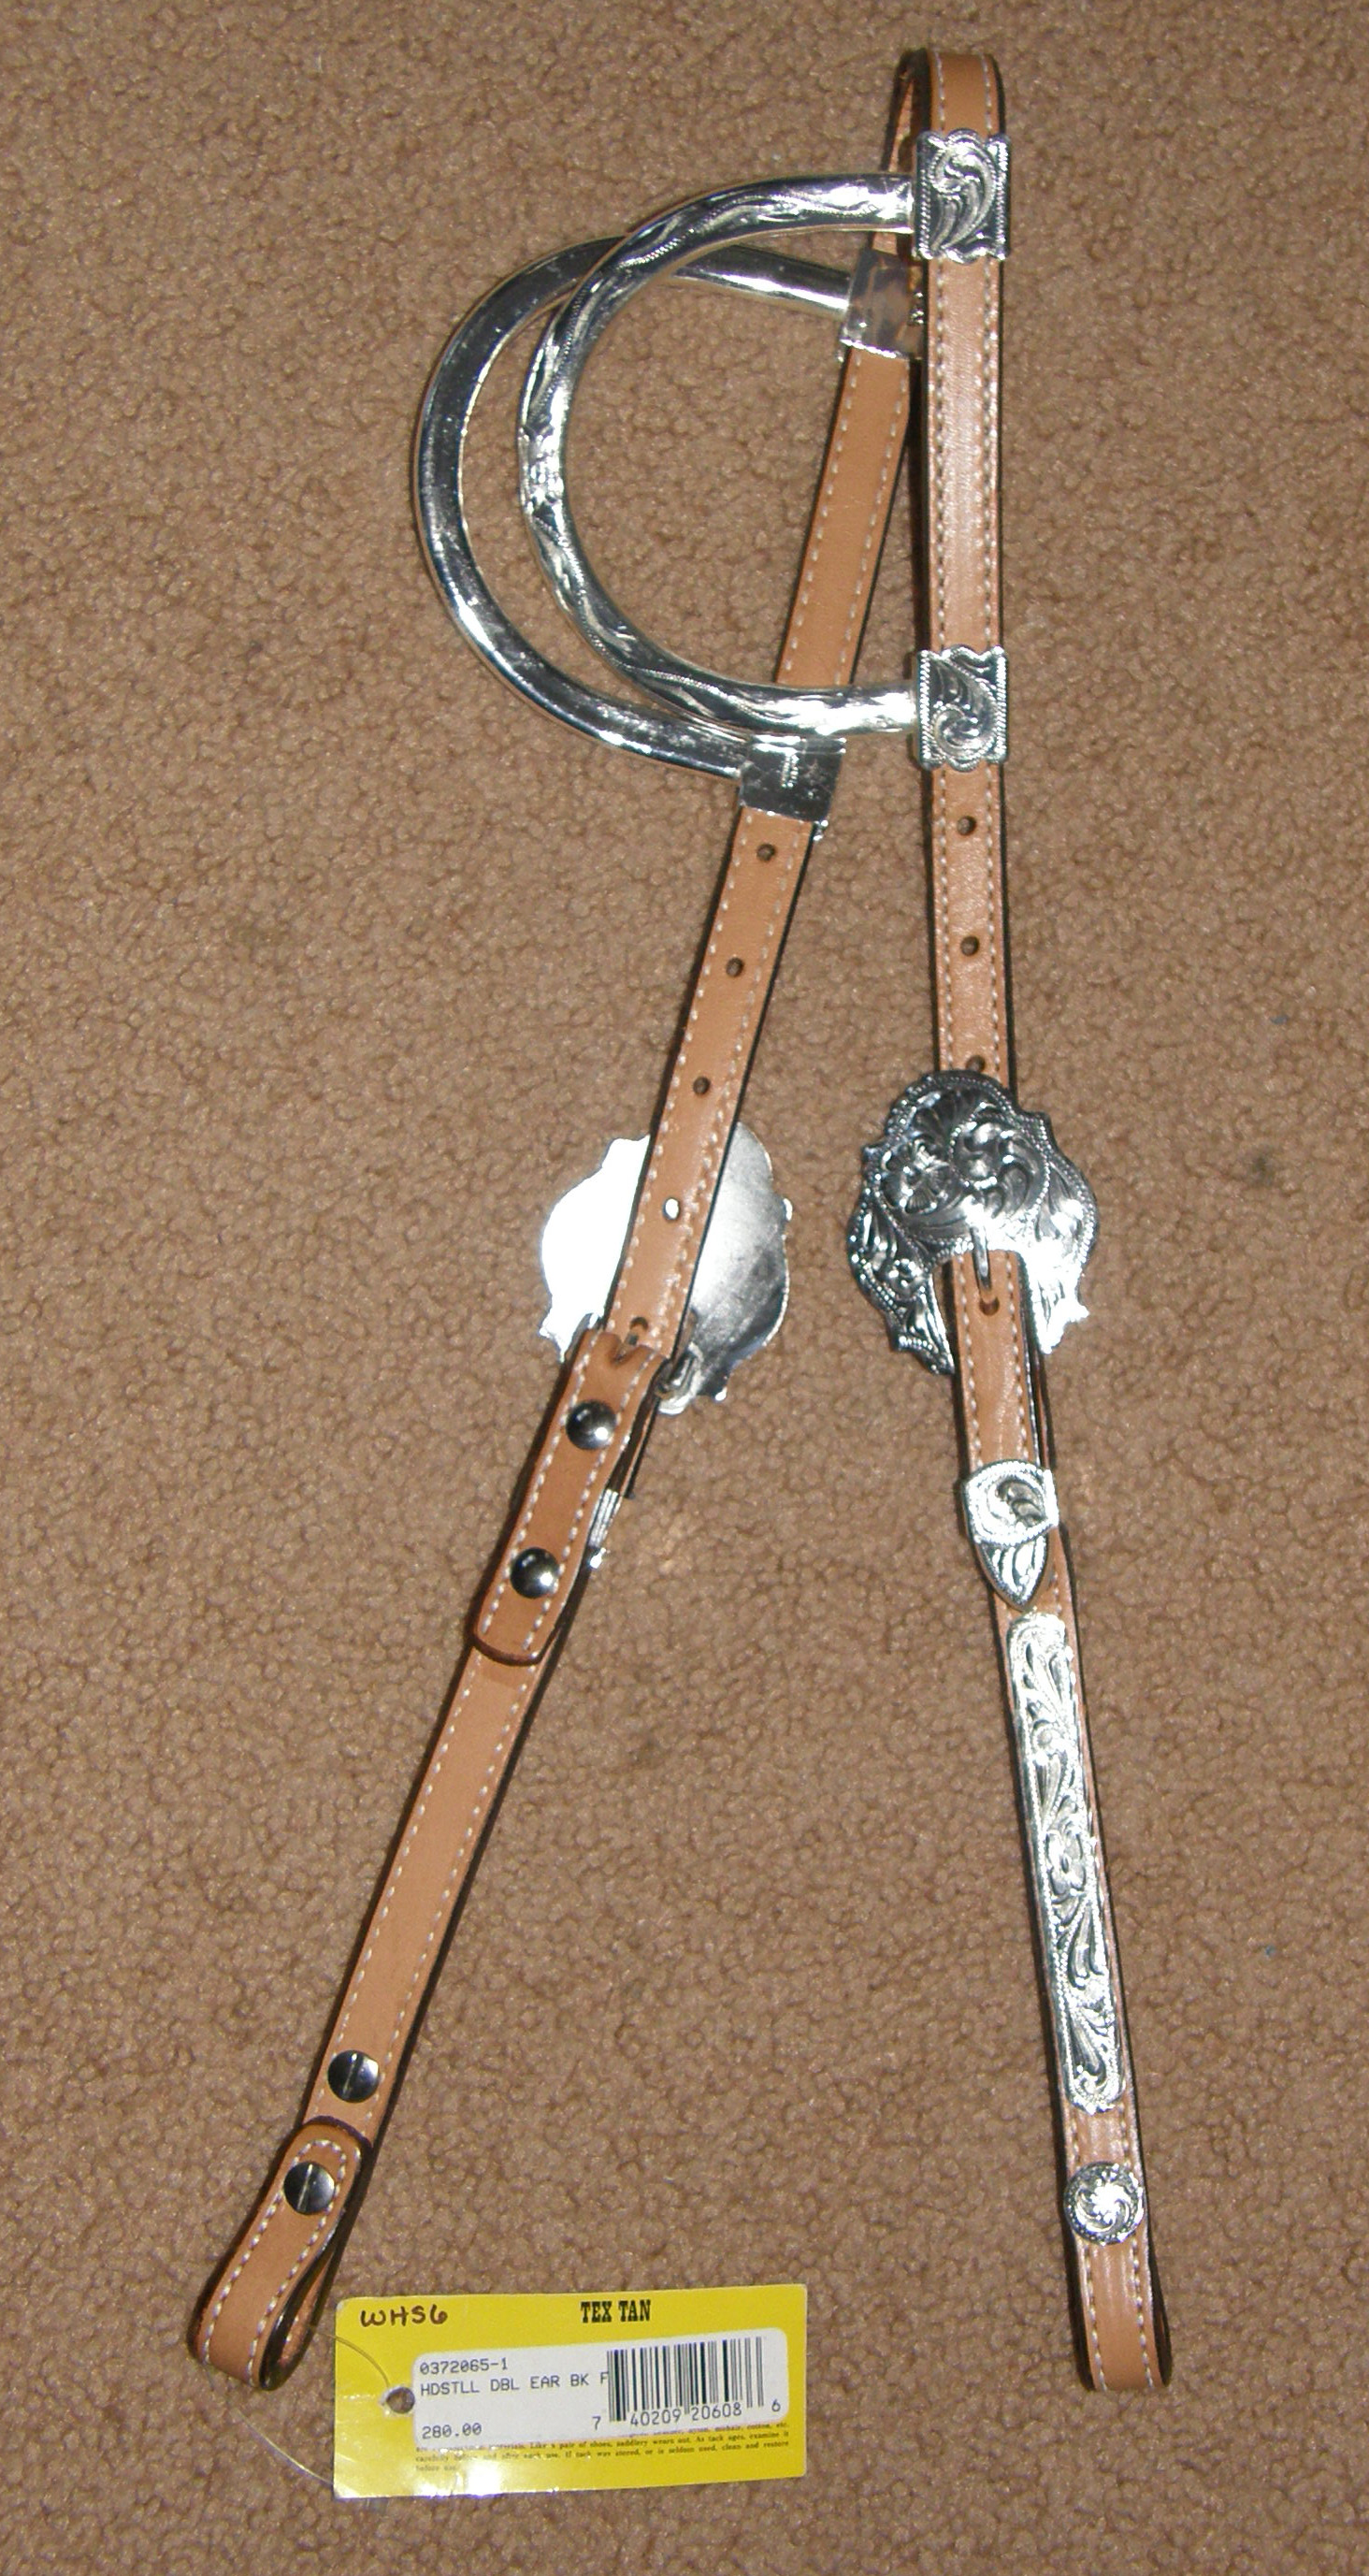 9312円 超人気 専門店 Mini Mahogany - Tahoe Tack Barbwire Leather Western Hand Tooled Browband Headstall with Matching Split Reins